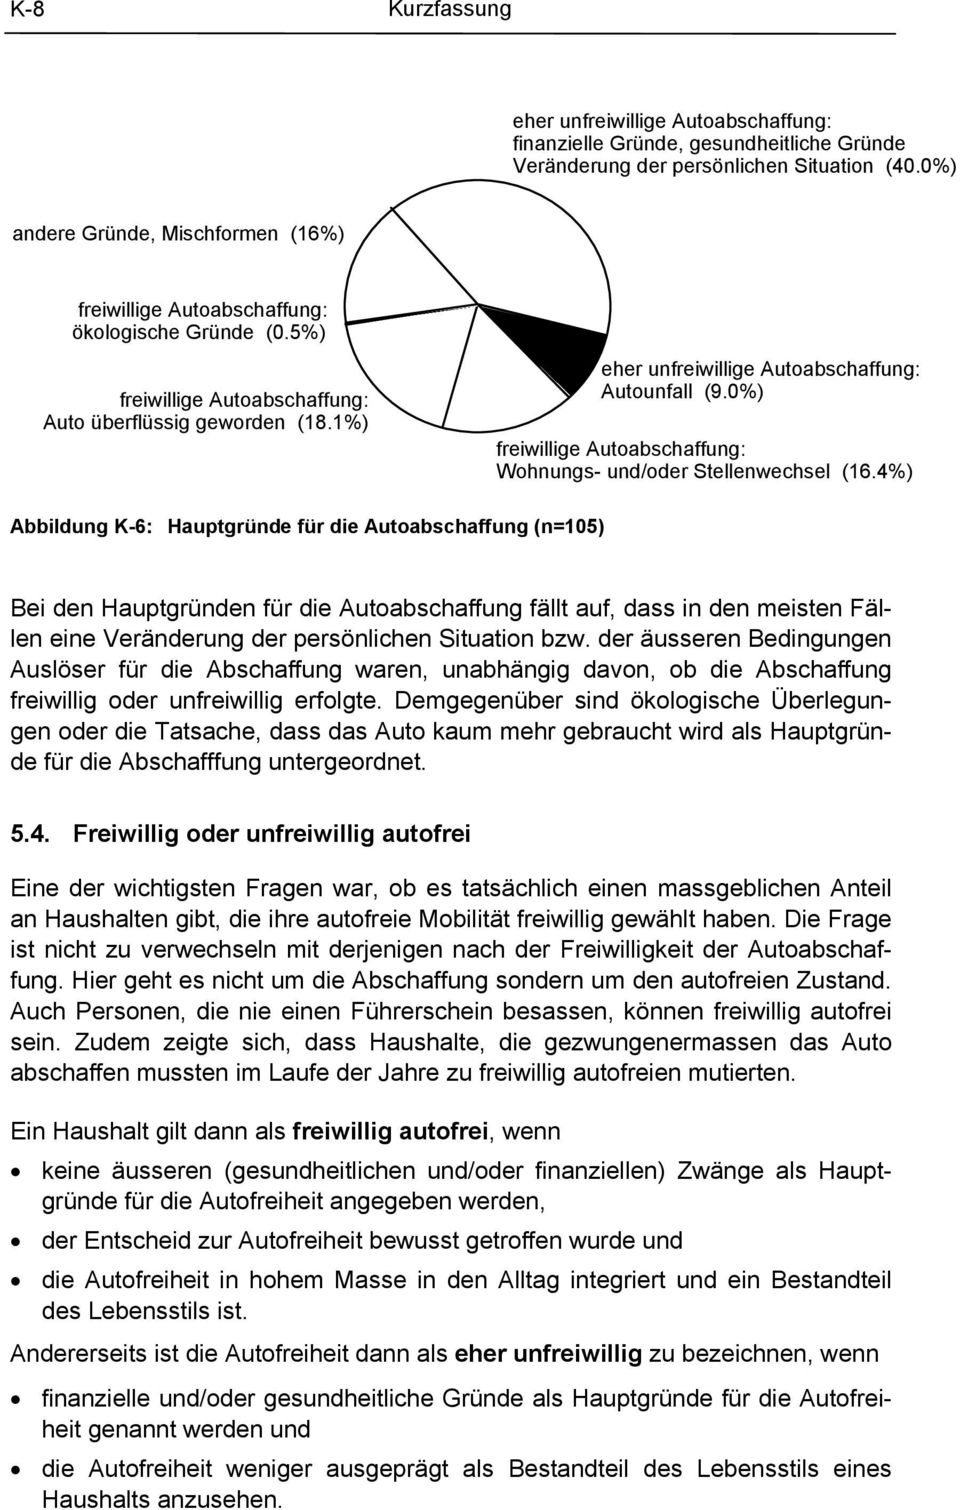 1%) eher unfreiwillige Autoabschaffung: Autounfall (9.0%) freiwillige Autoabschaffung: Wohnungs- und/oder Stellenwechsel (16.